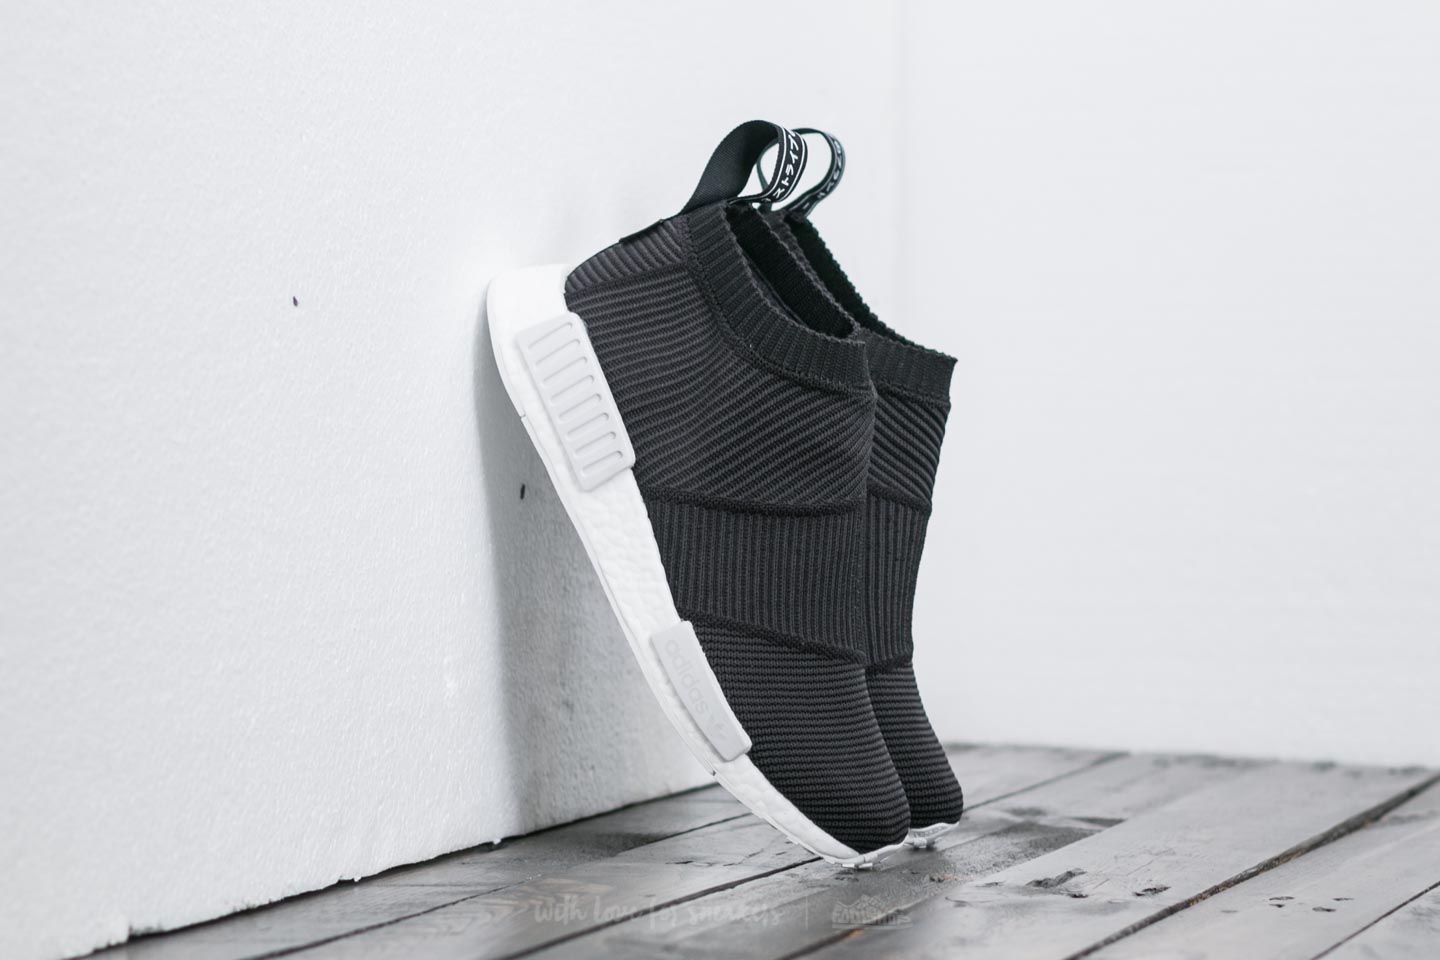 Men's shoes adidas NMD_CS1 "Gore-Tex" Primeknit Core Black/ Core Black/ Ftw White